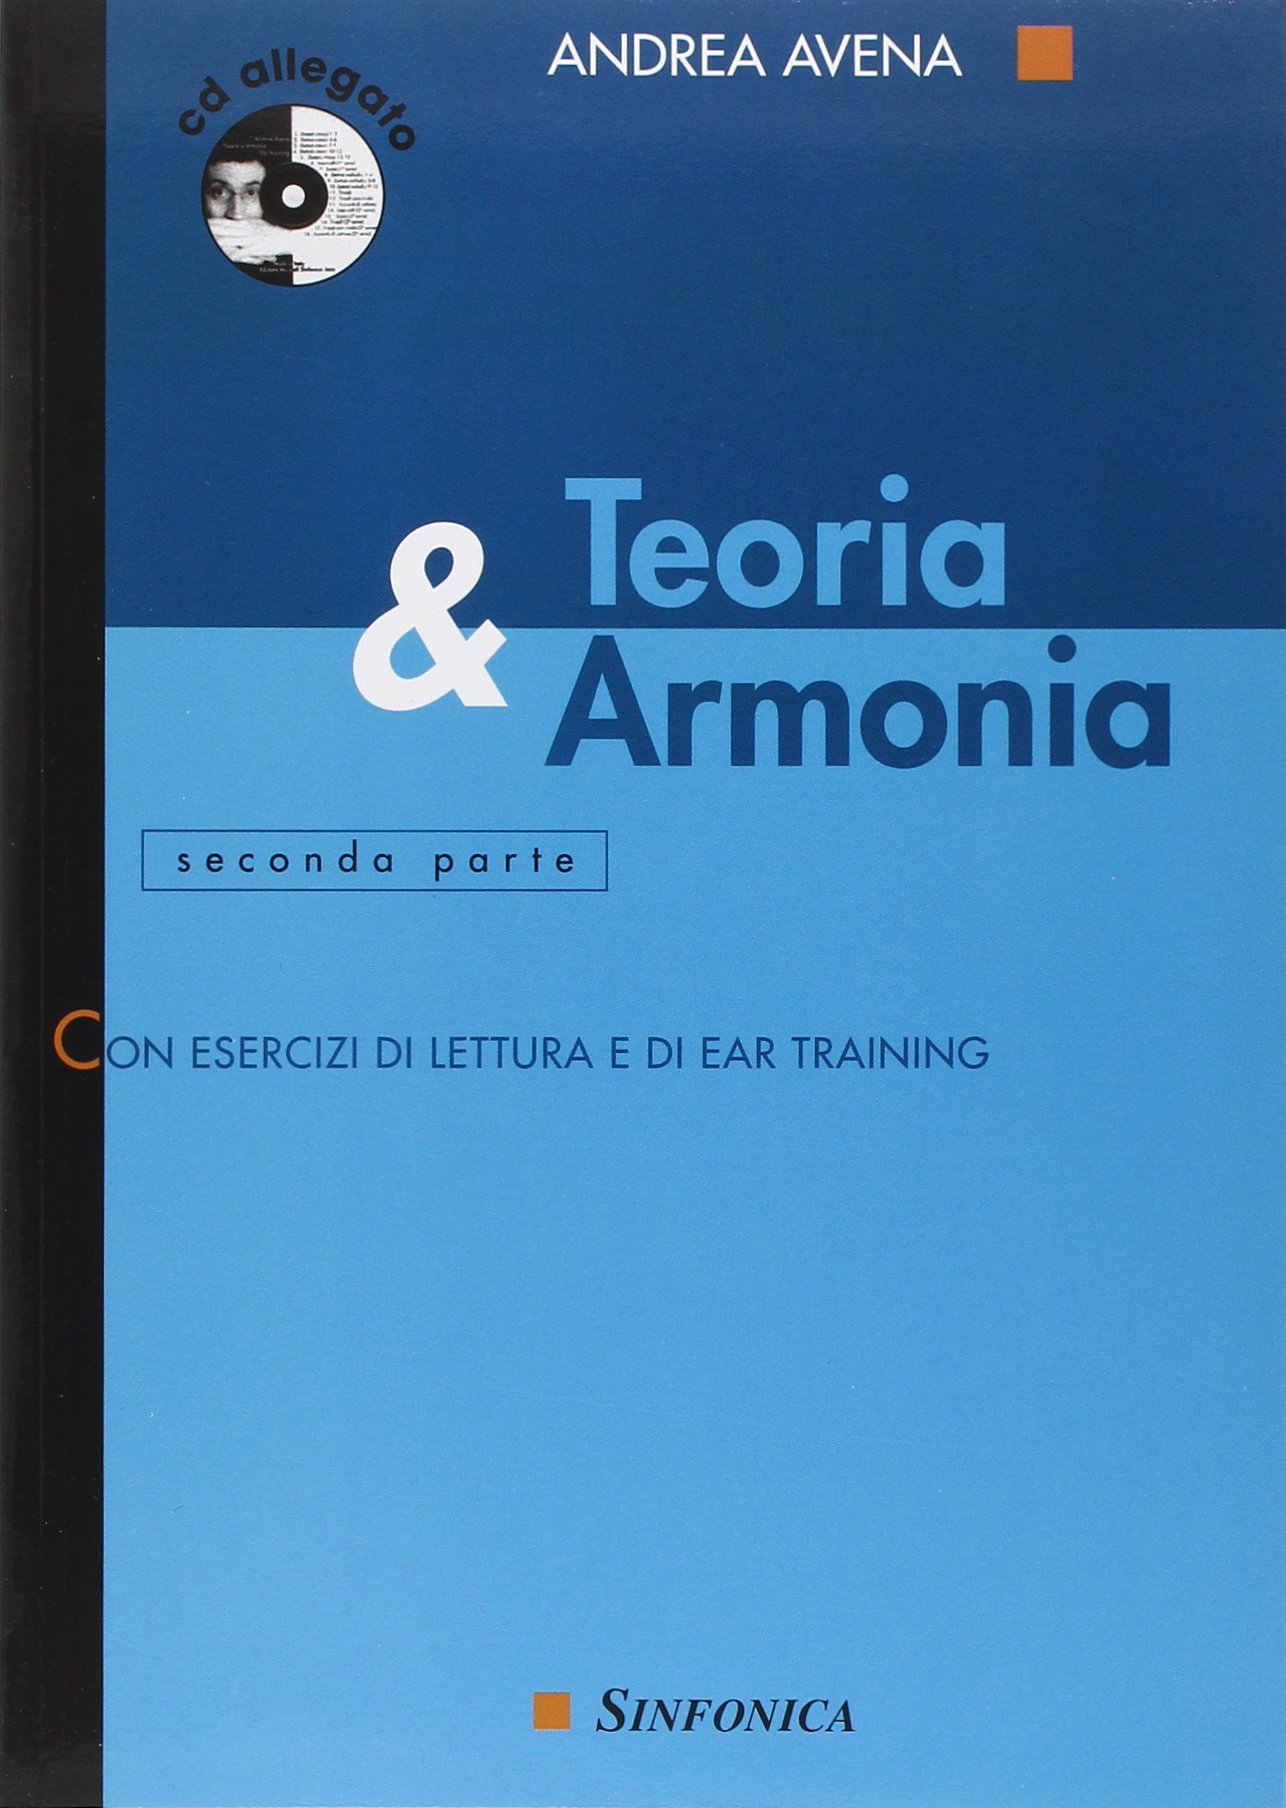 Libri Andrea Avena - Teoria & Armonia. Con CD Audio NUOVO SIGILLATO, EDIZIONE DEL 07/01/2015 SUBITO DISPONIBILE